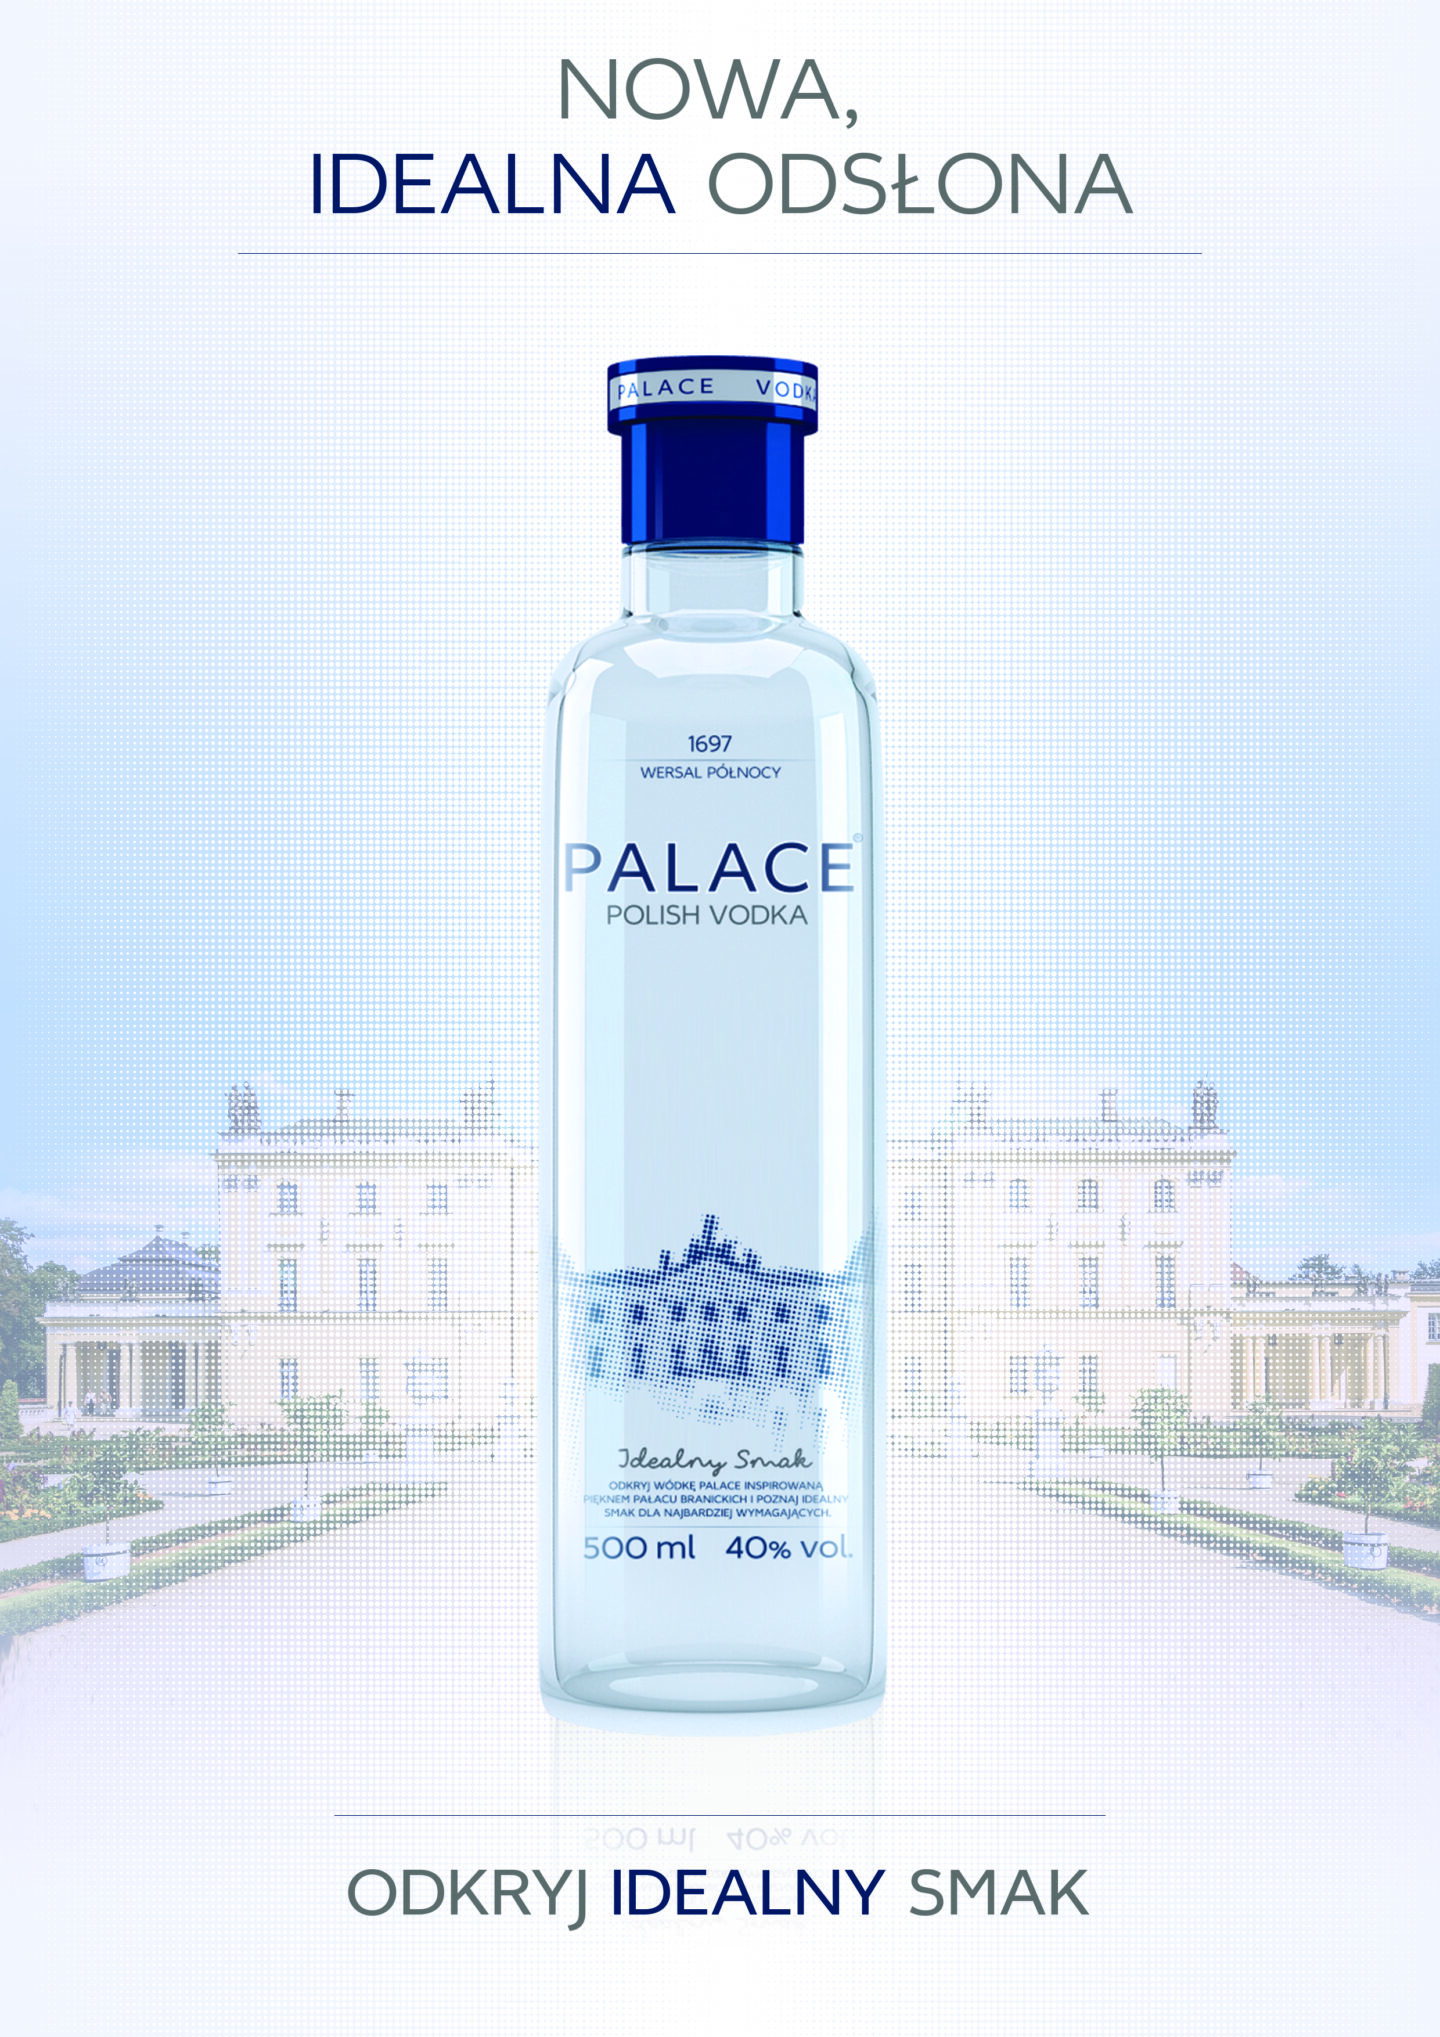 Idealny smak wódki Palace powraca w nowej odsłonie